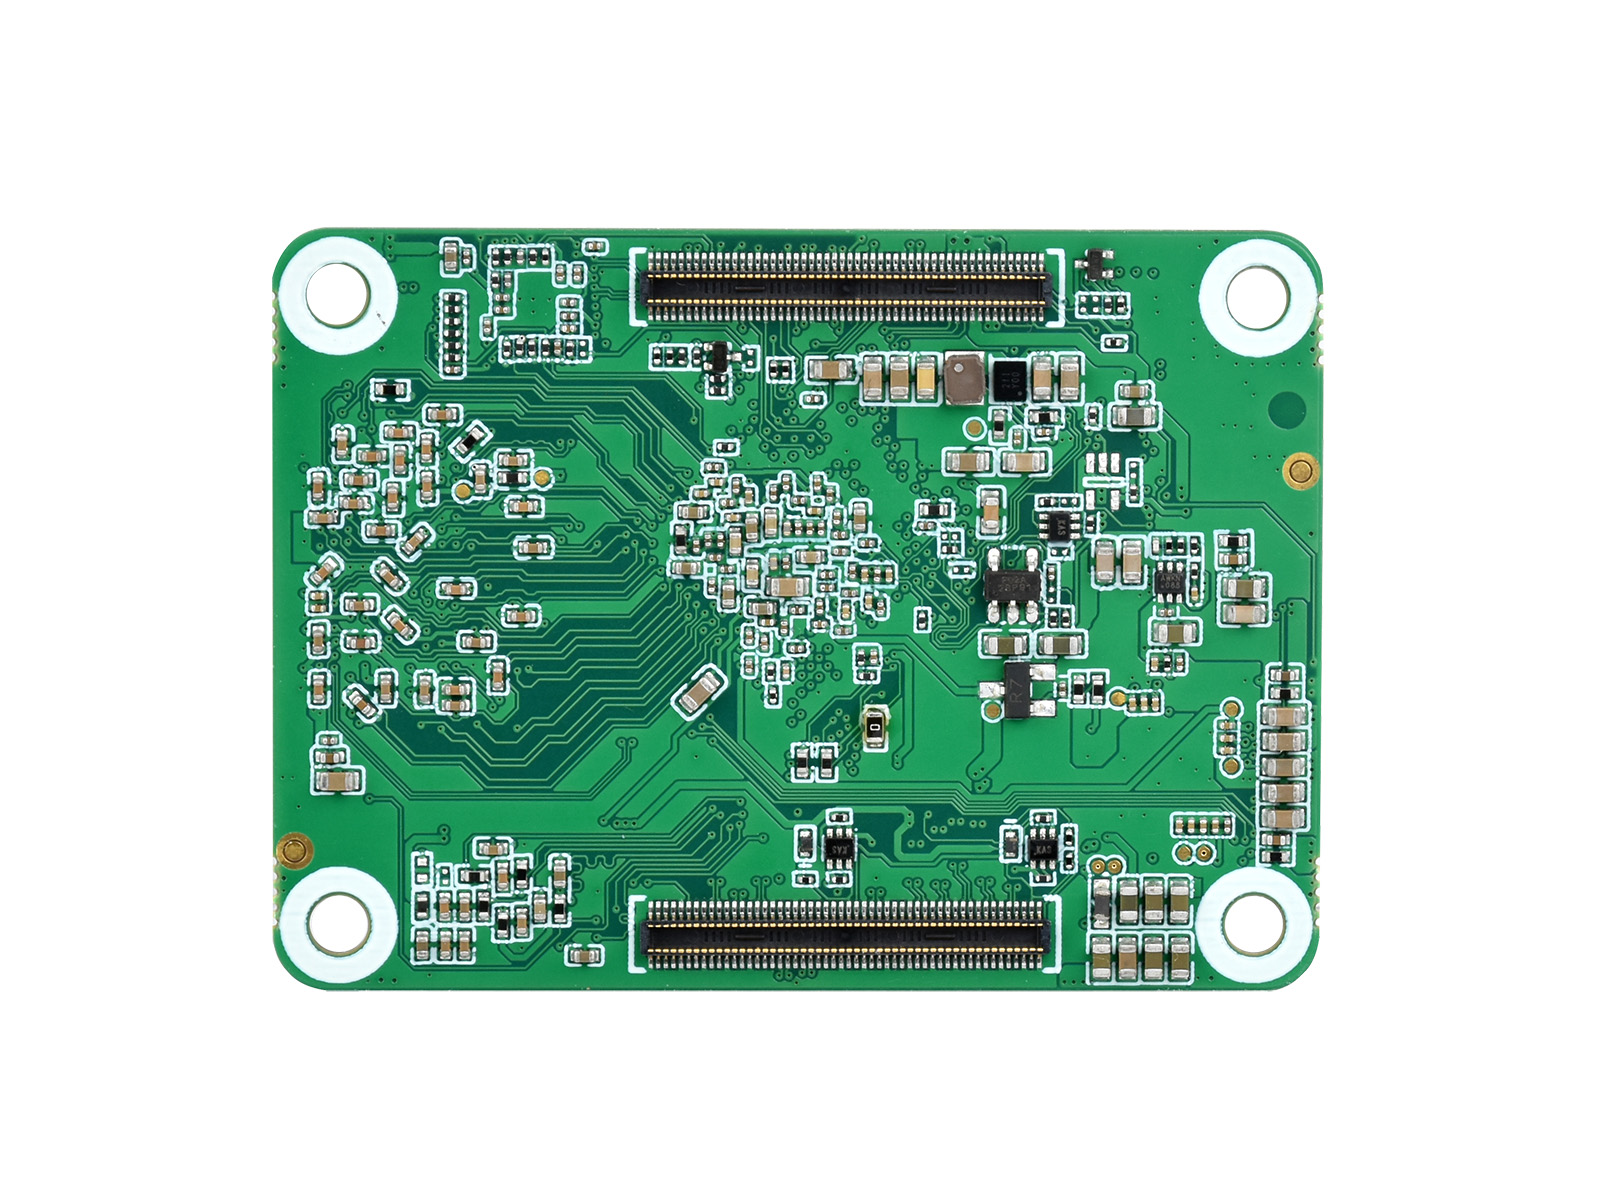 Core3566 Module, Rockchip RK3566 Quad-core Processor, Compatible 